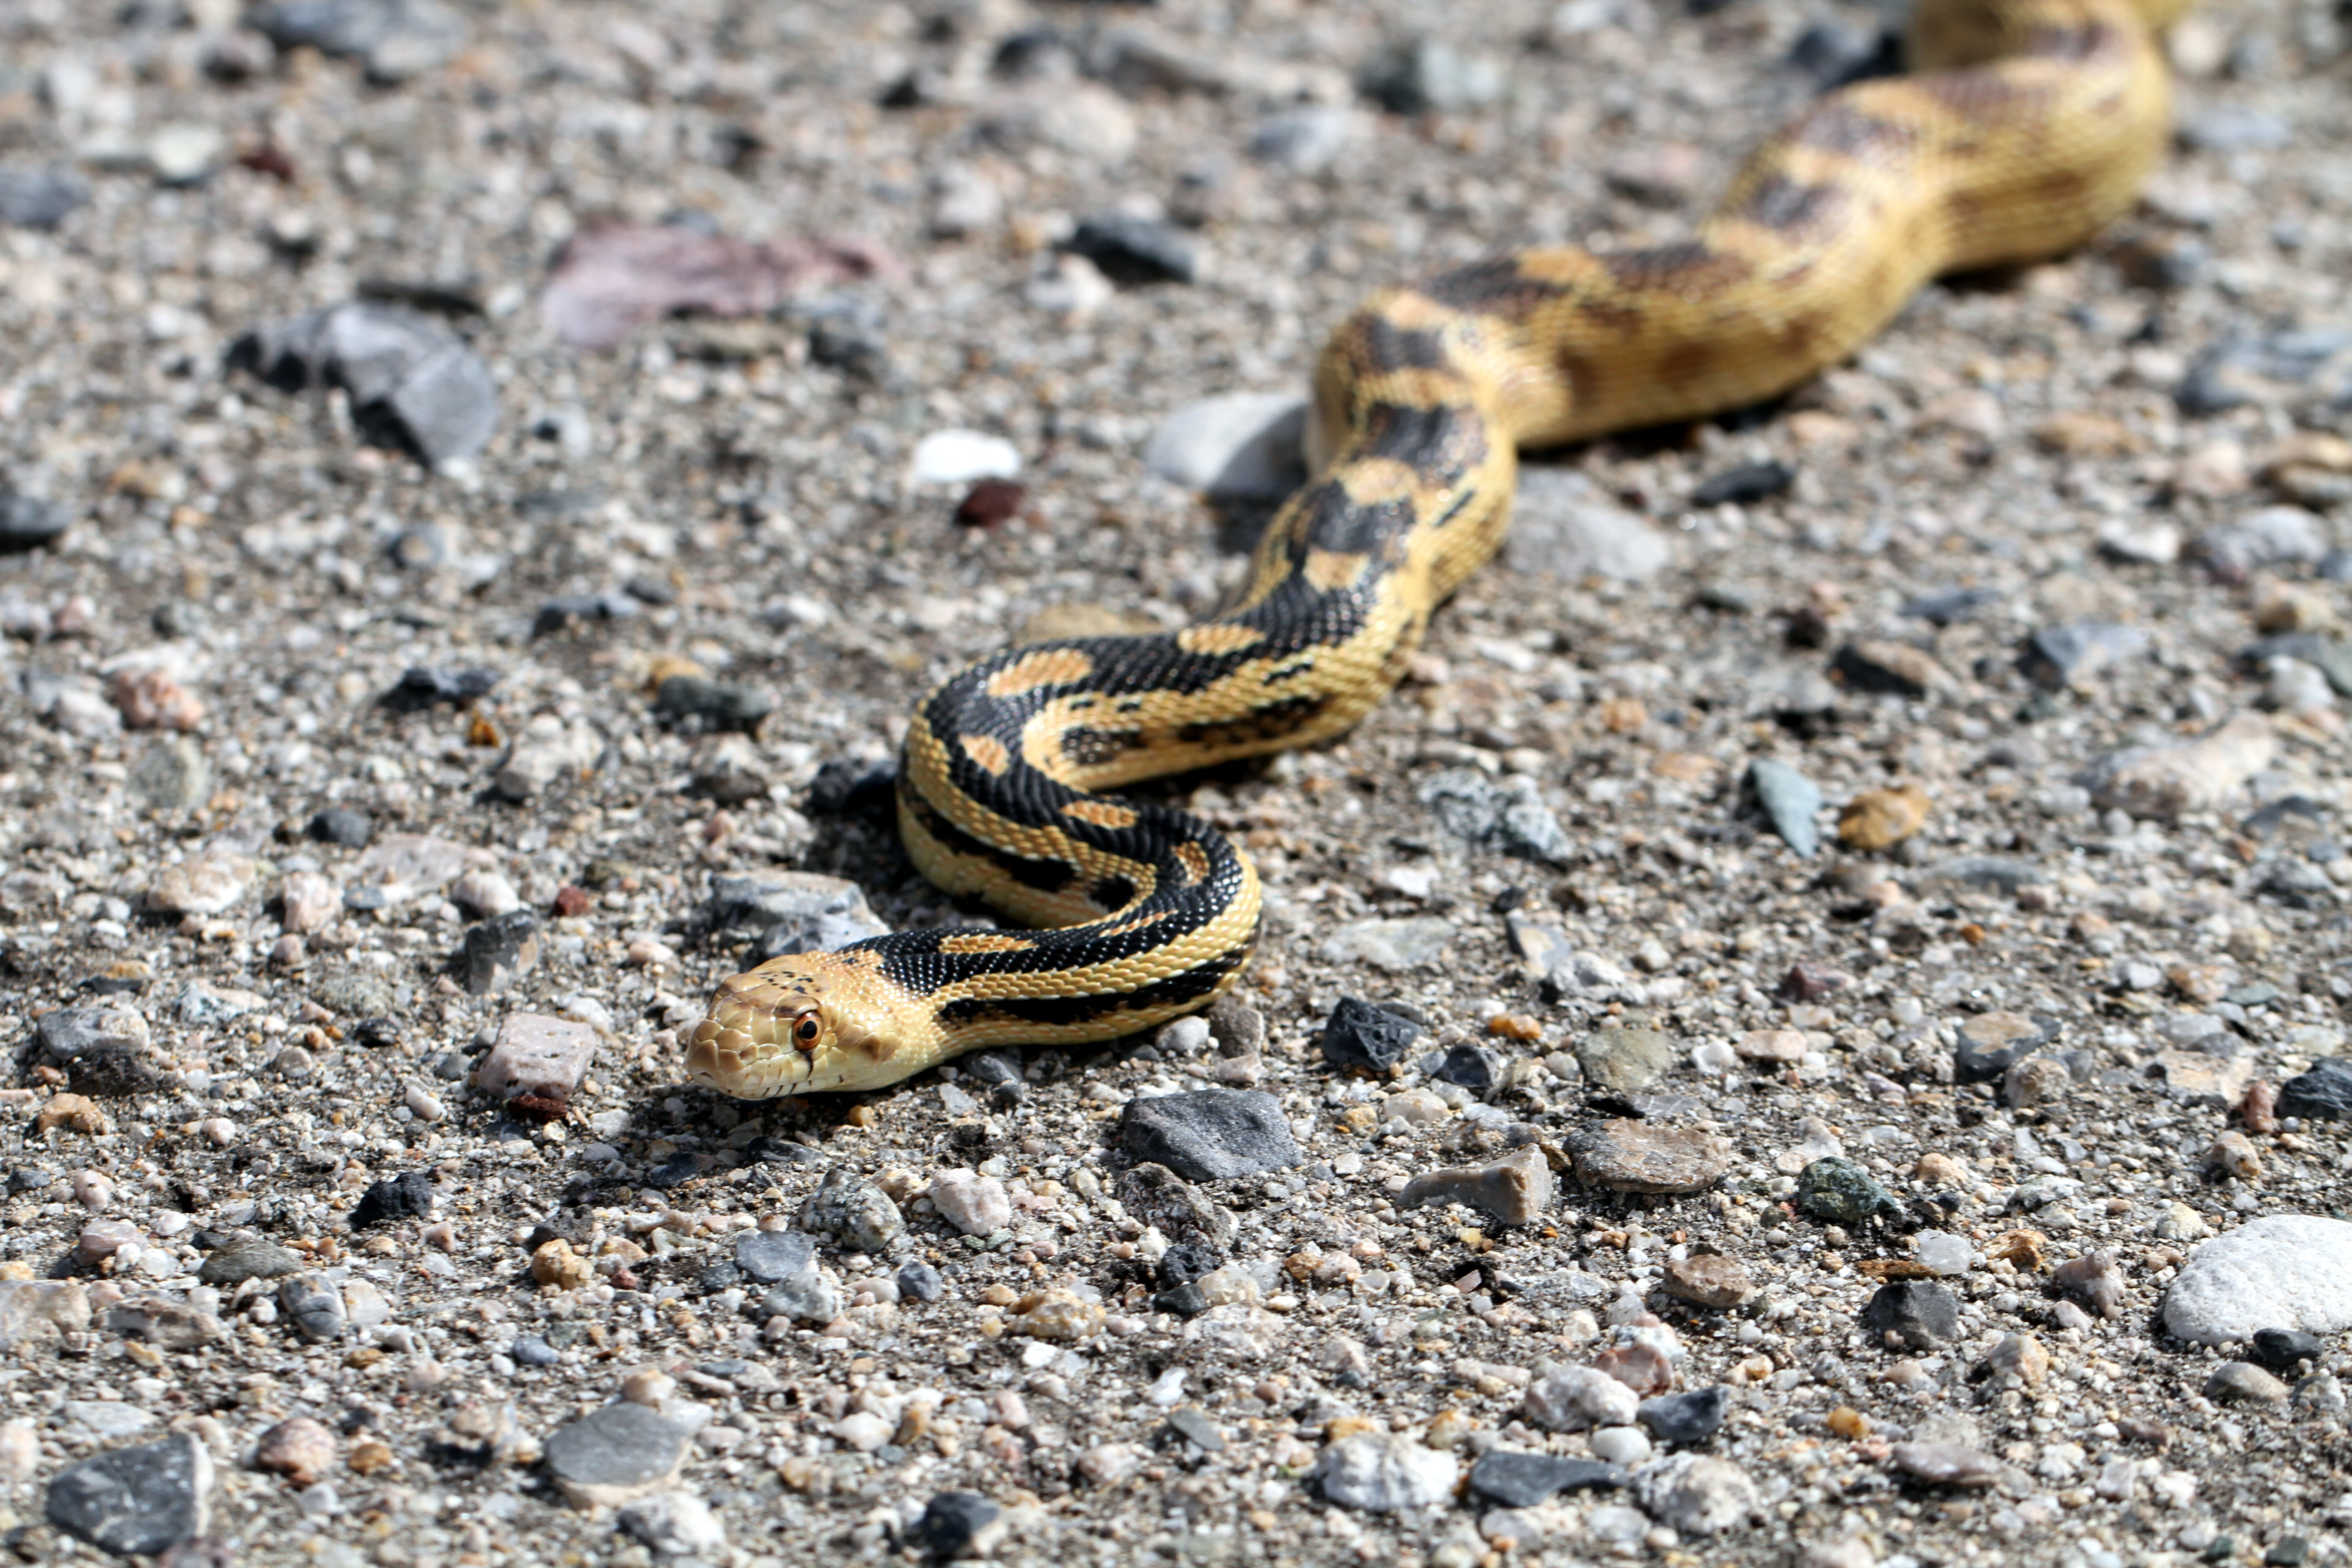 File:Great Basin Gopher Snake - Flickr - GregTheBusker (1).jpg ...